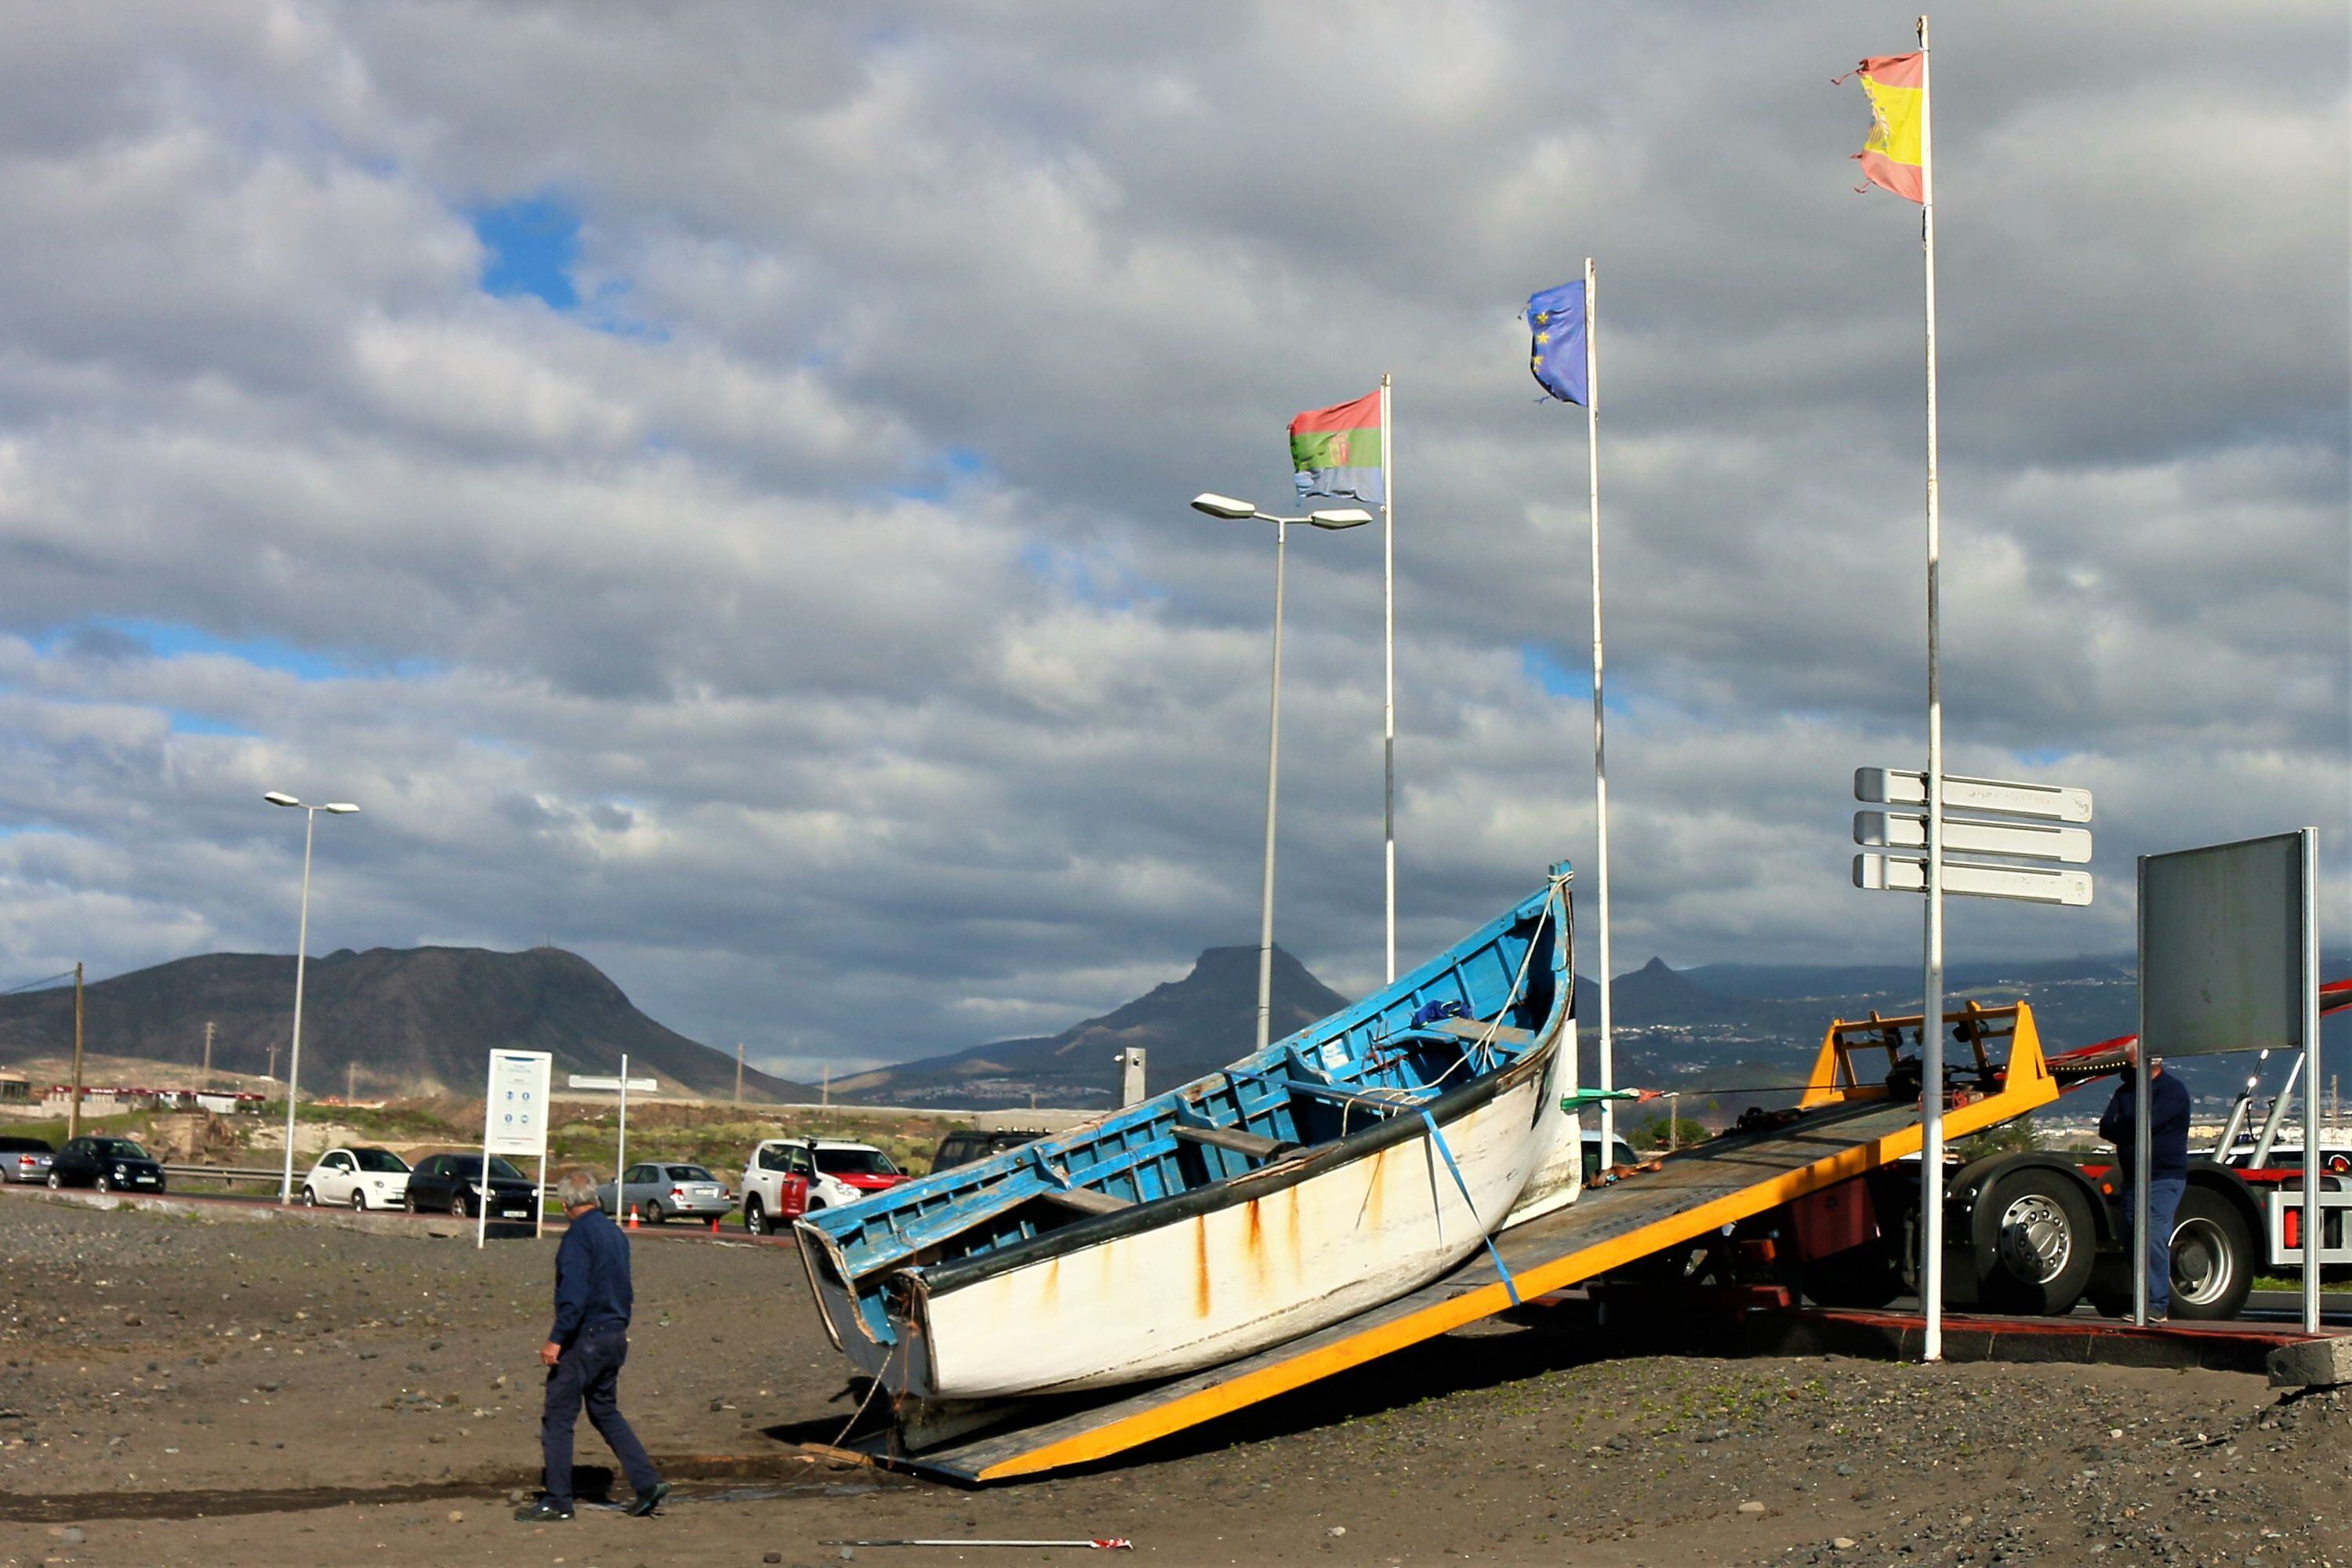 Imagen tomada el 15 de enero de 2021 en la que se muestra la retirada de una patera que llegó a la playa de Las Galletas, al sur de Tenerife. Esta tarea corre a cargo del ayuntamiento local.